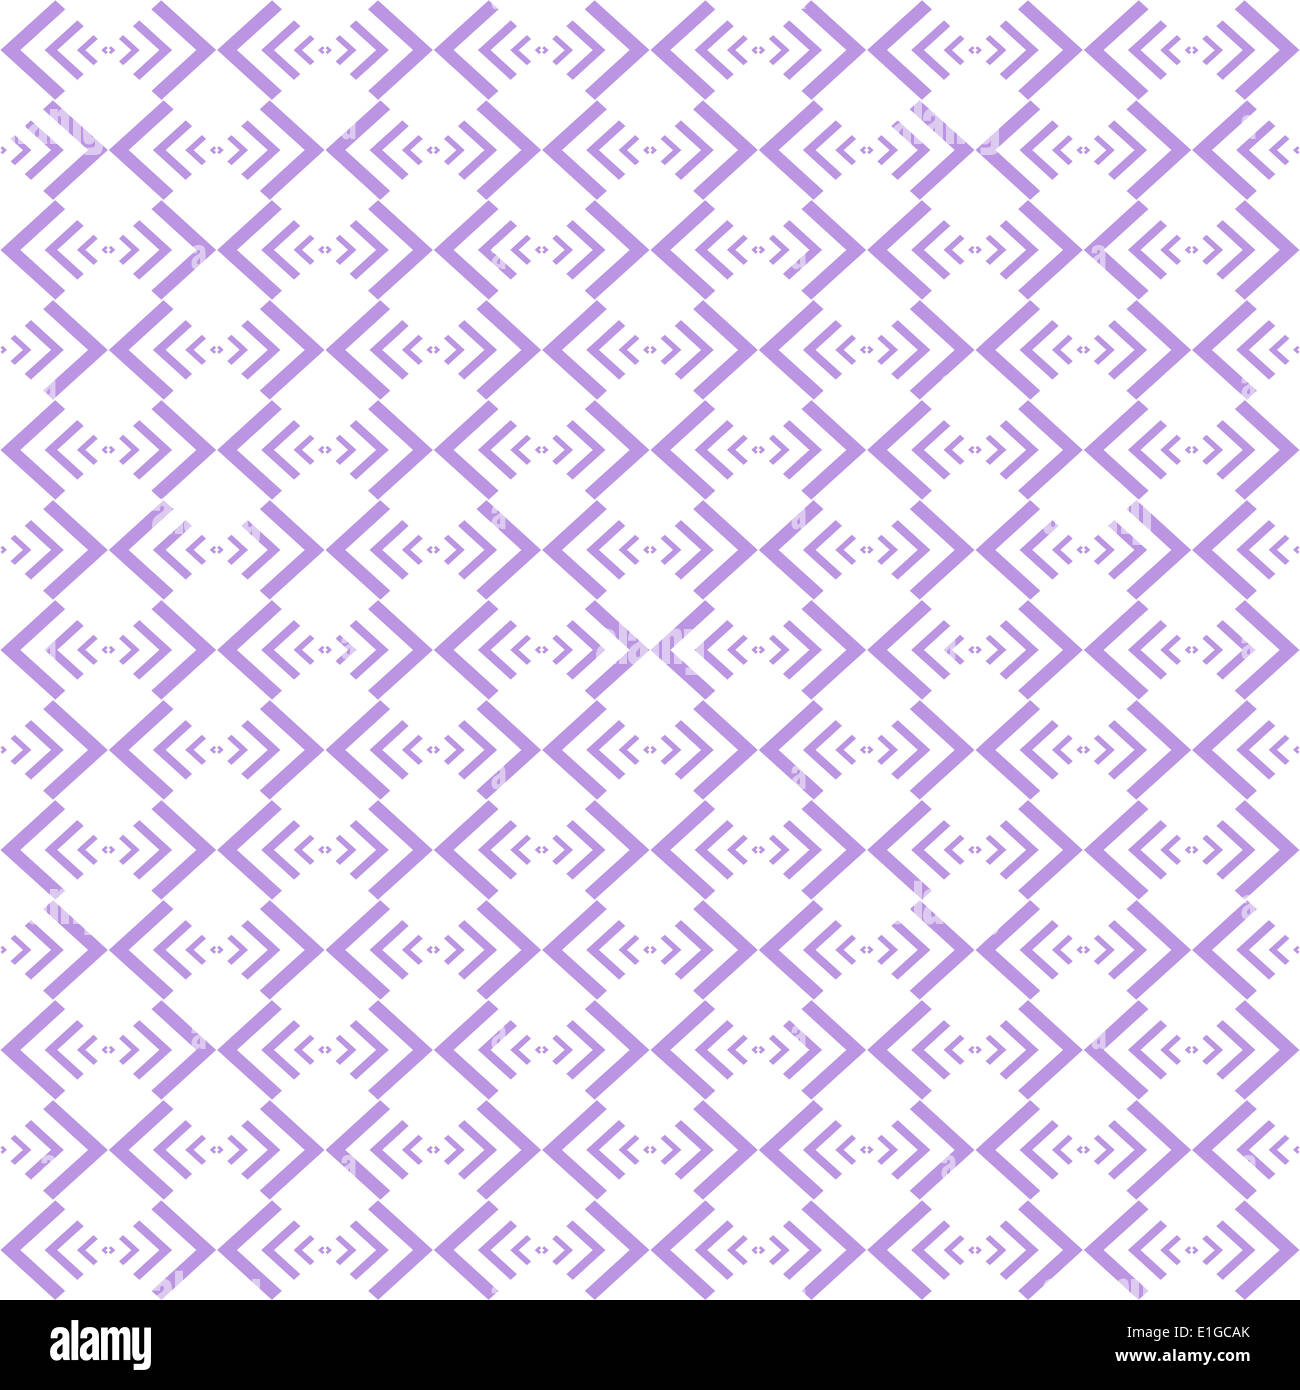 Background of seamless geometric pattern Stock Photo